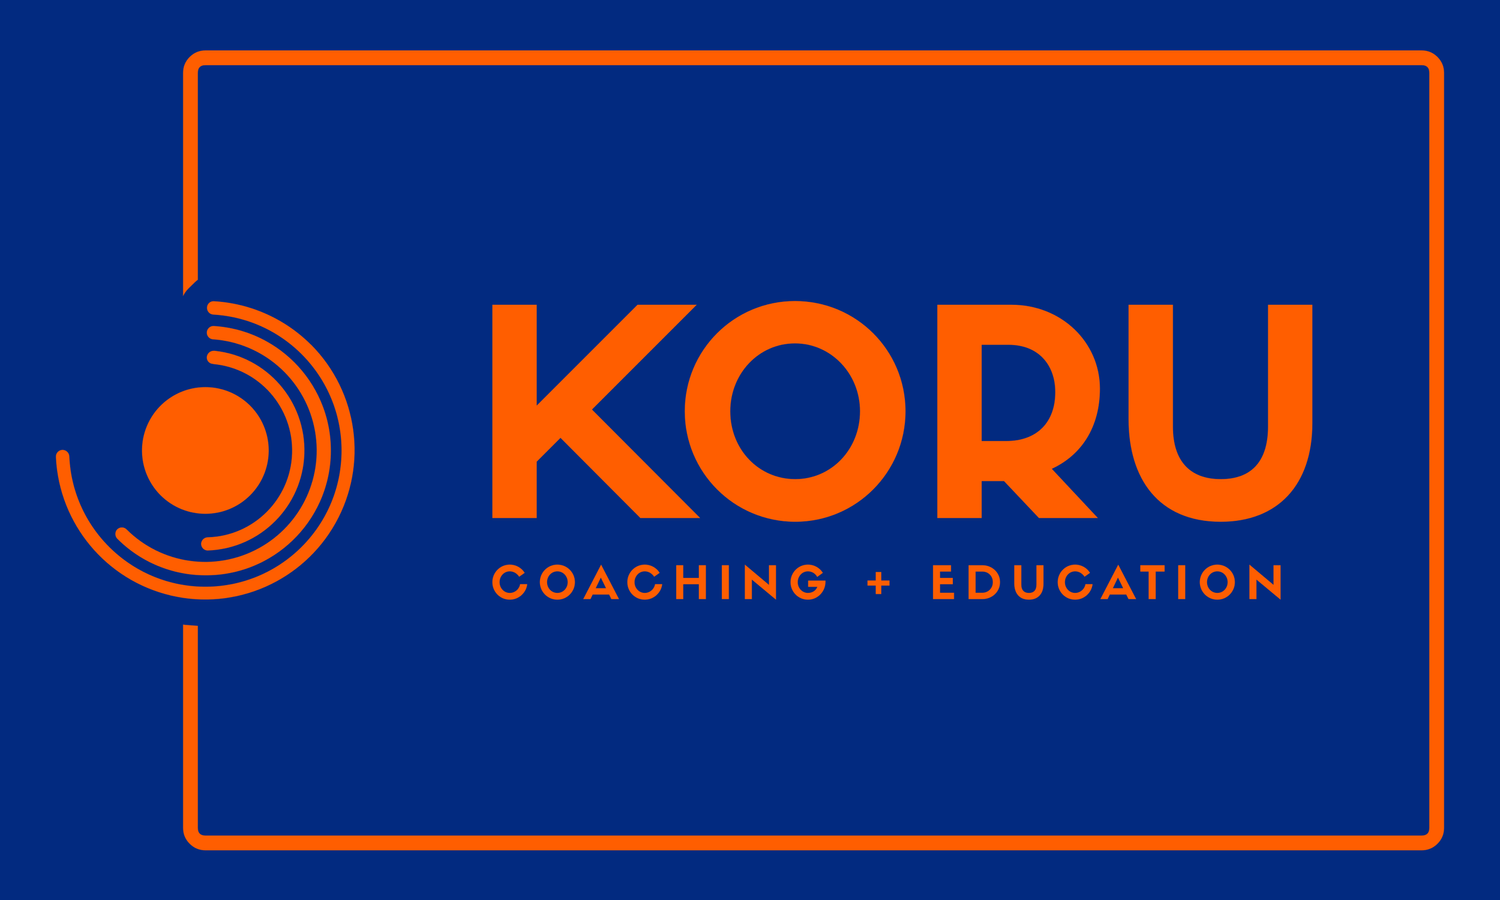 Koru Coaching  + Education